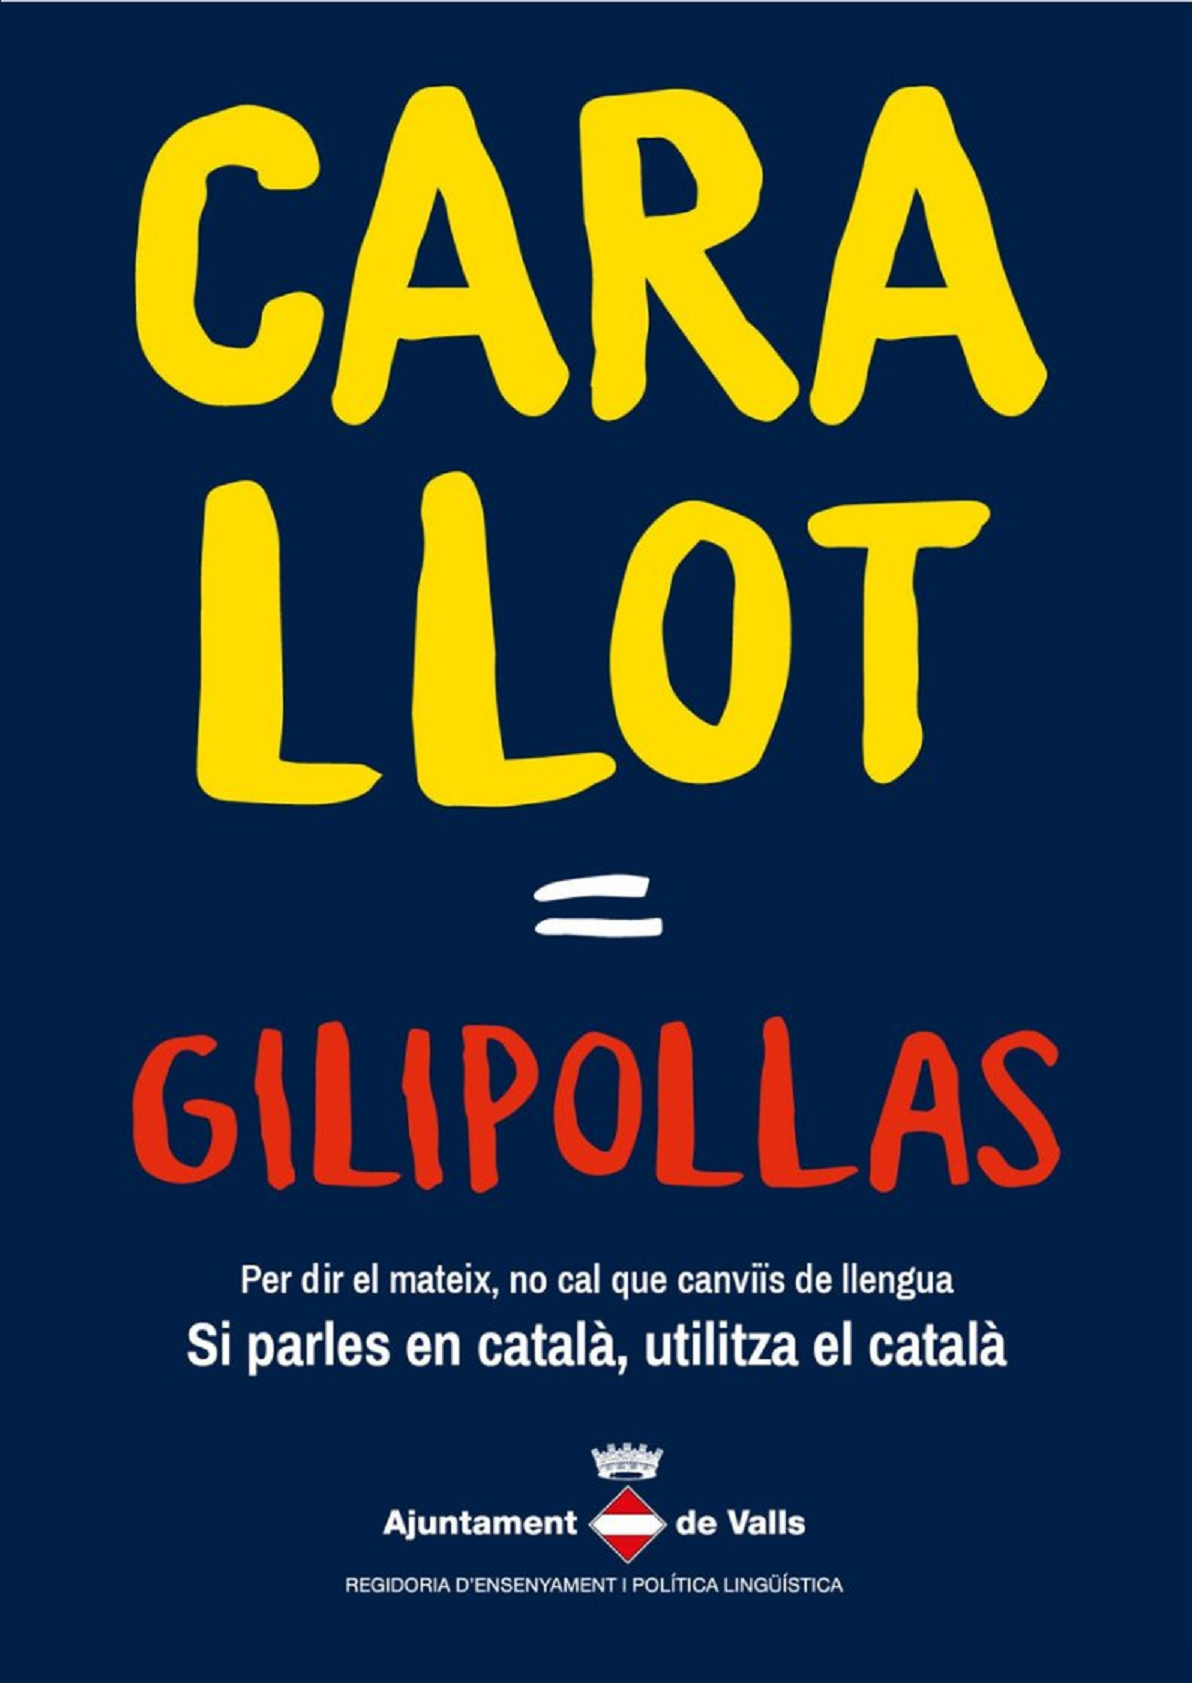 La contundente campaña de Valls a favor del catalán